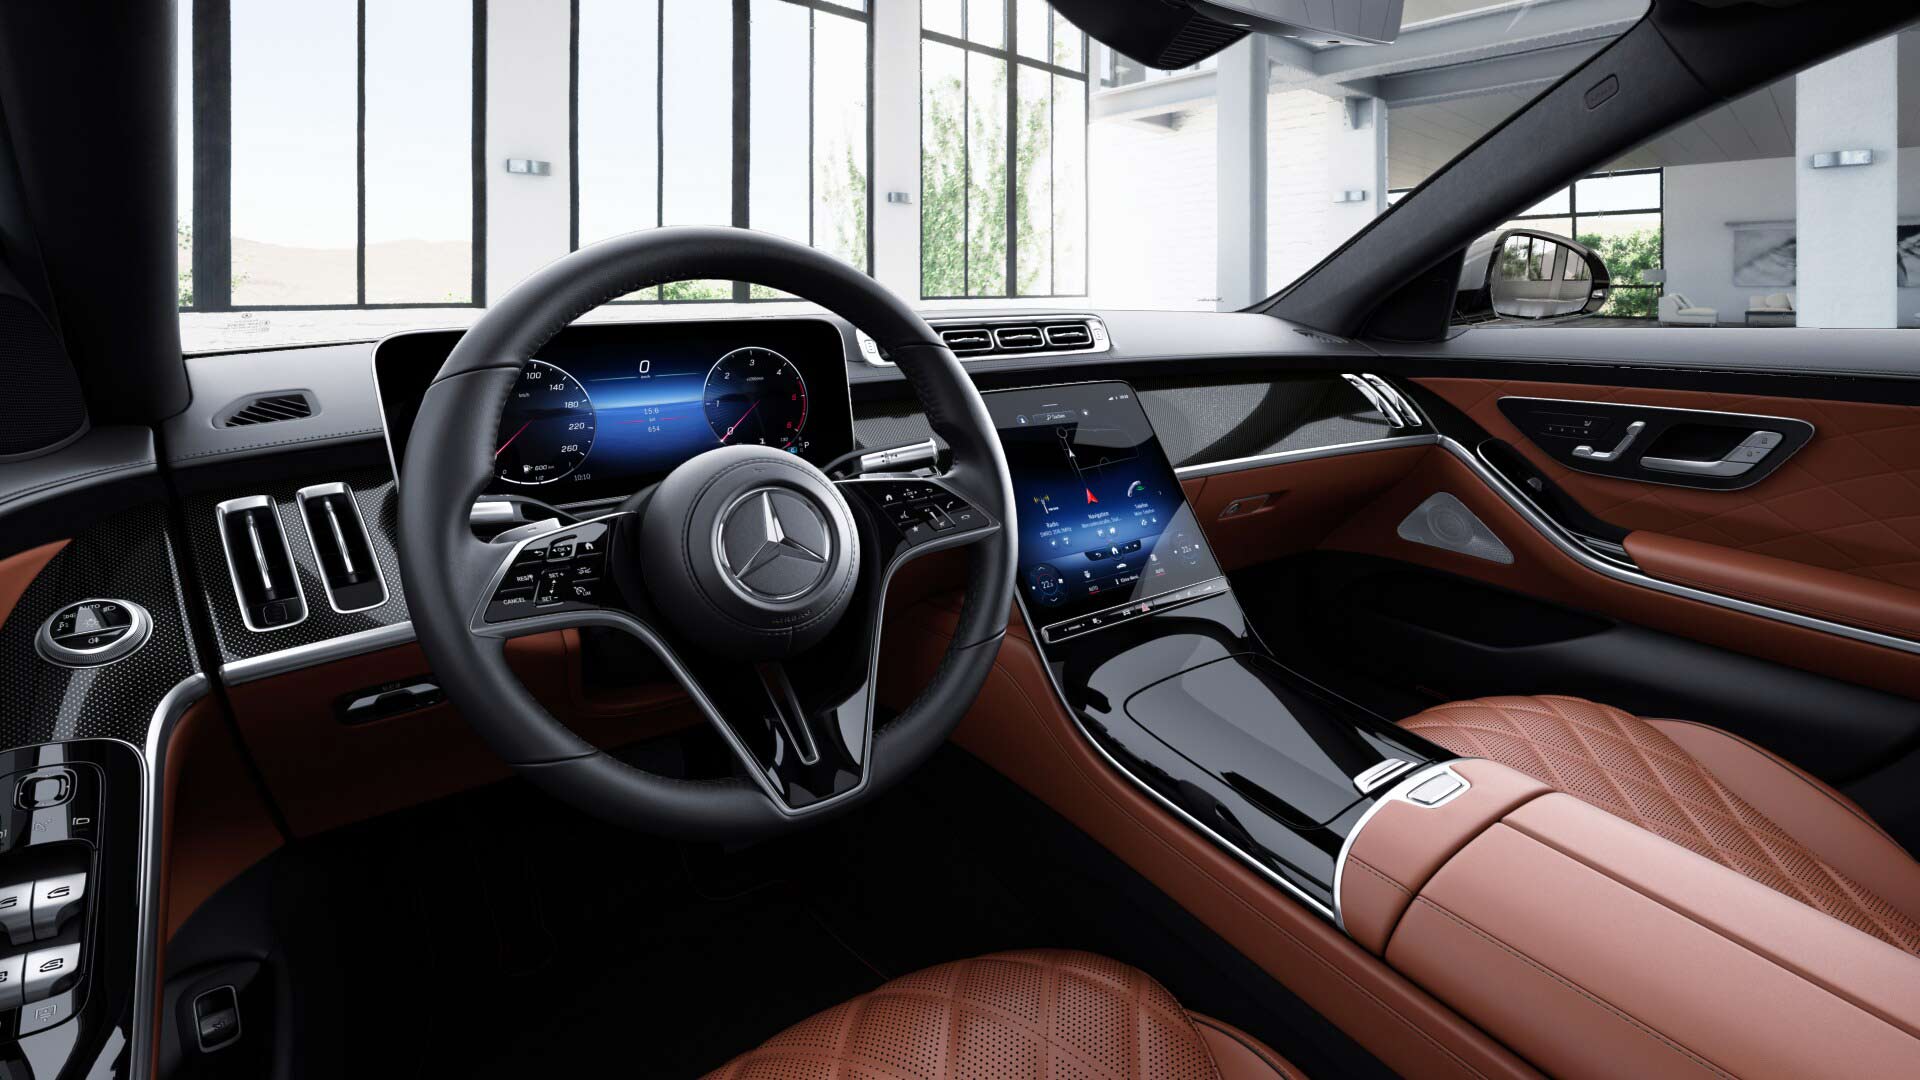 Poste de conduite de la Mercedes-Benz Classe S Limousine Luxury avec vue sur l’écran tactile et la console centrale (et sellerie)